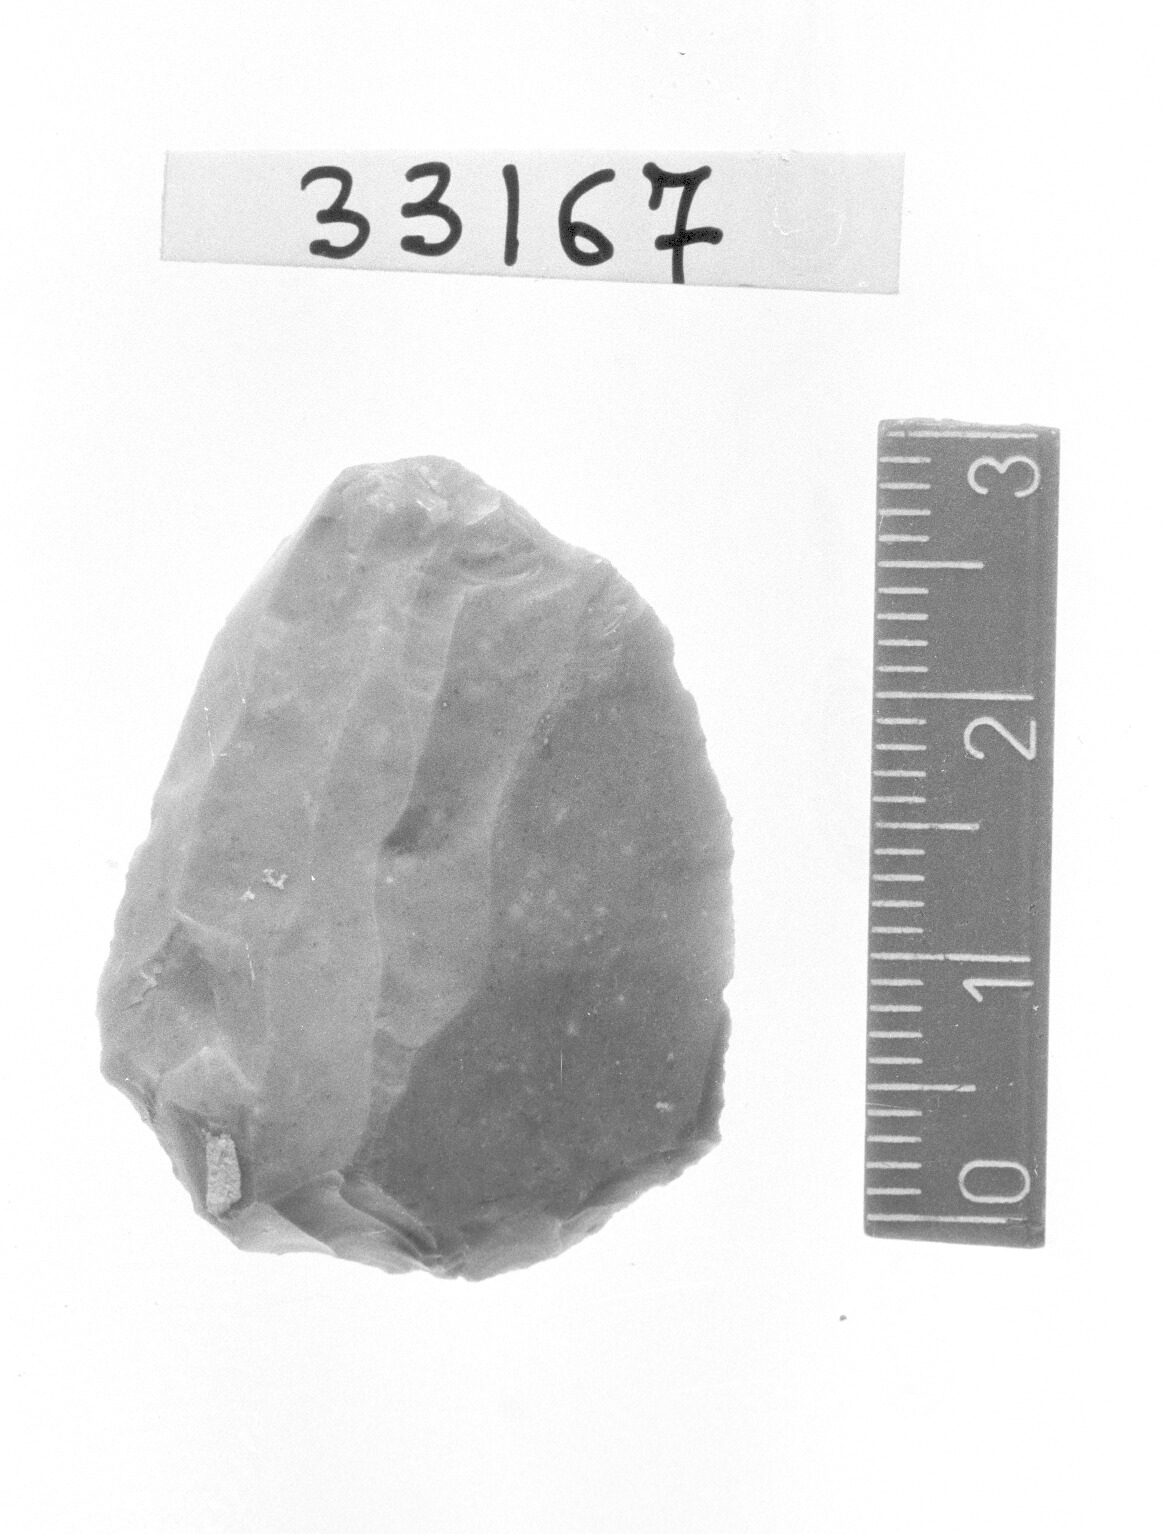 grattatoio frontale corto - Epigravettiano (Paleolitico superiore)